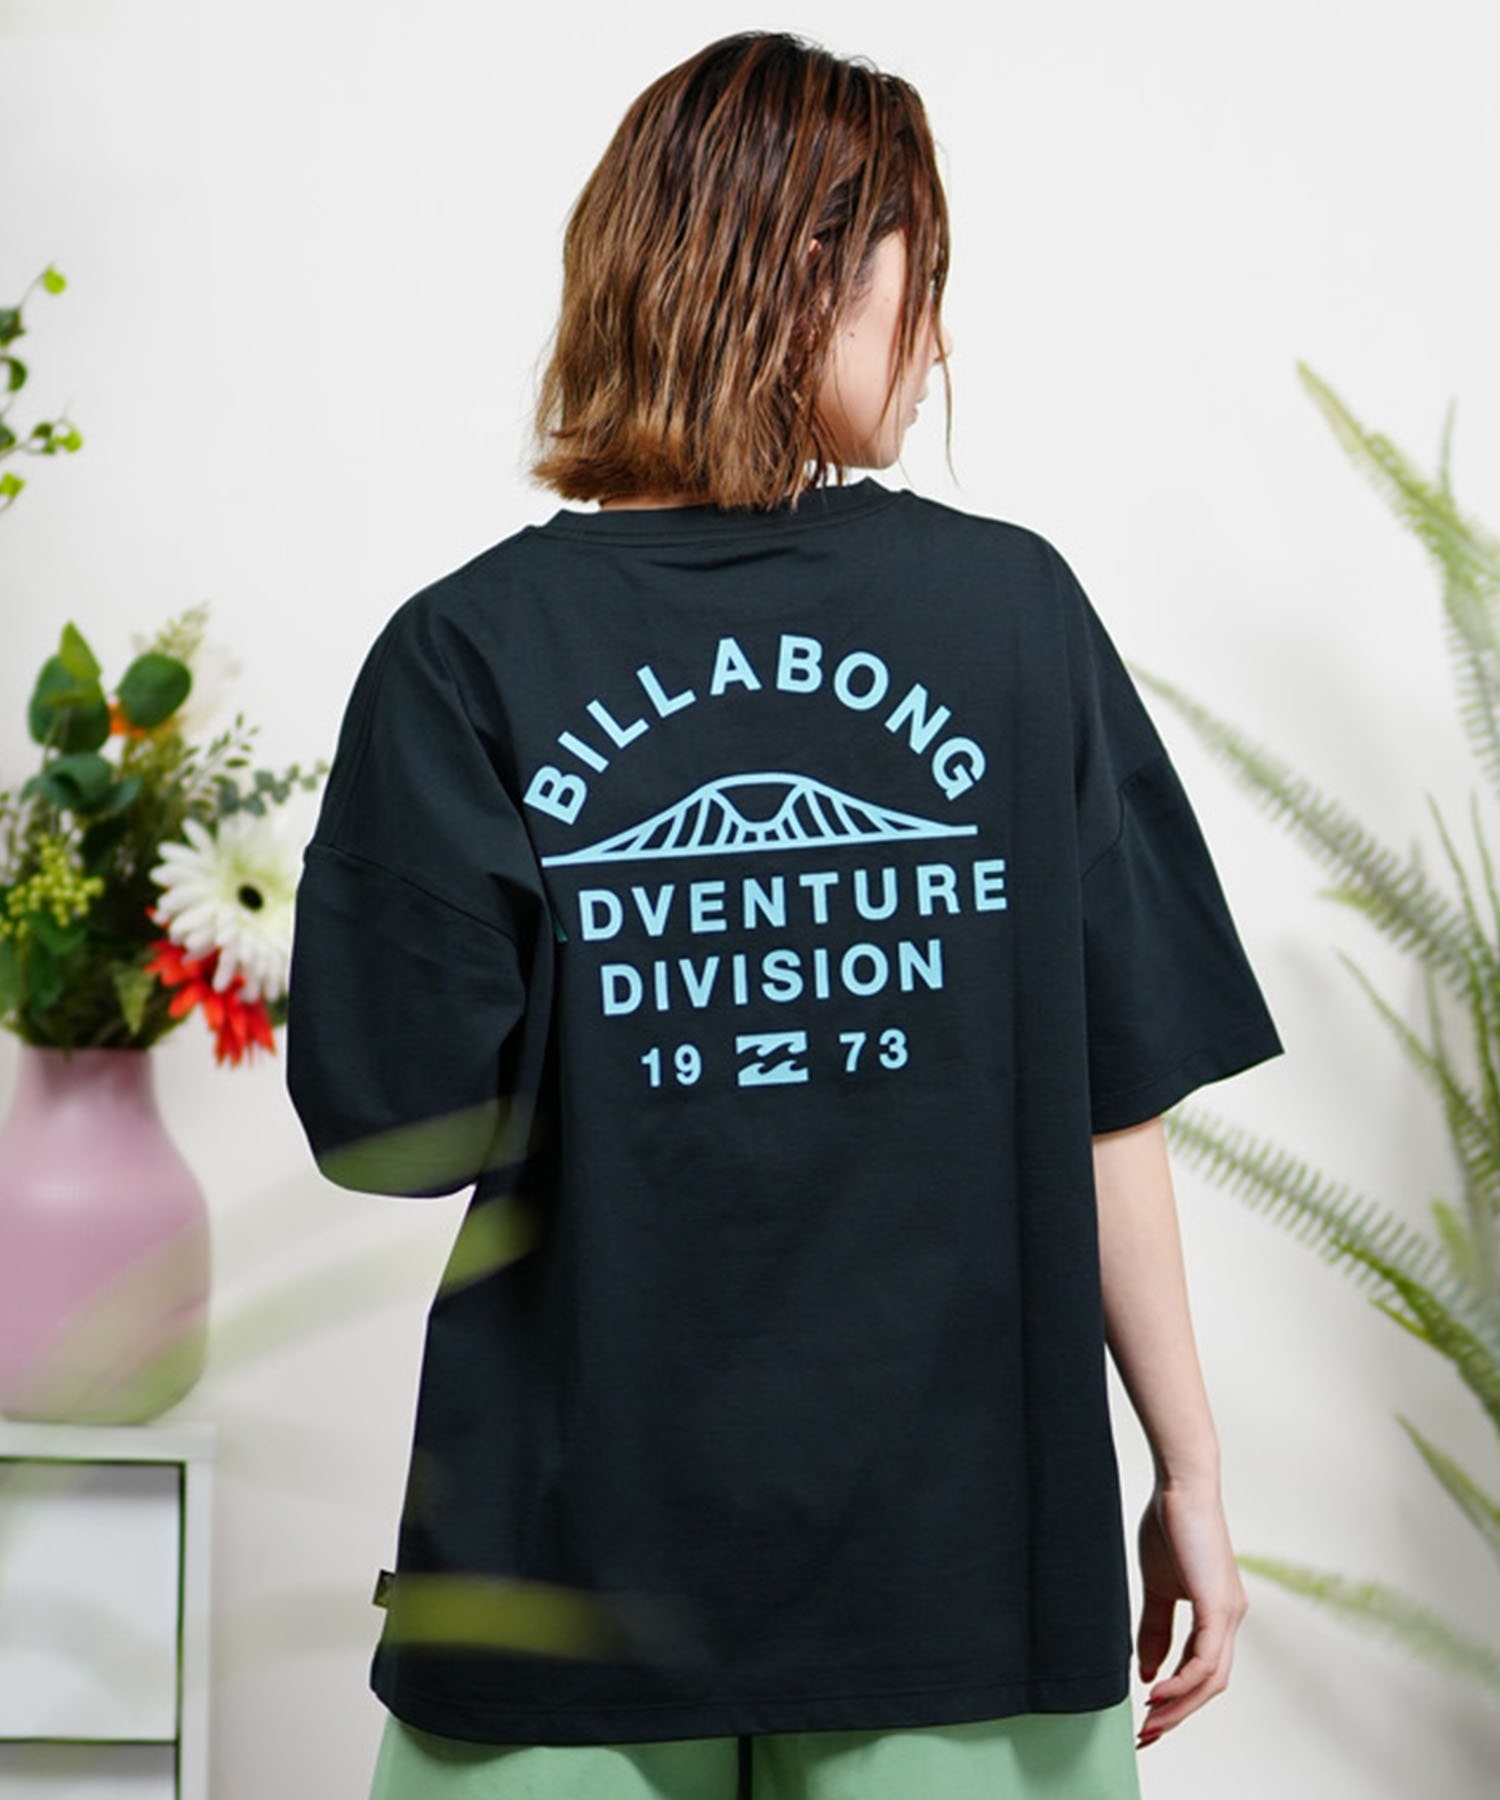 BILLABONG ビラボン レディース Tシャツ ラッシュガード ユーティリティー 水陸両用 UVケア ムラサキスポーツ限定 BE013-223(LGN-M)